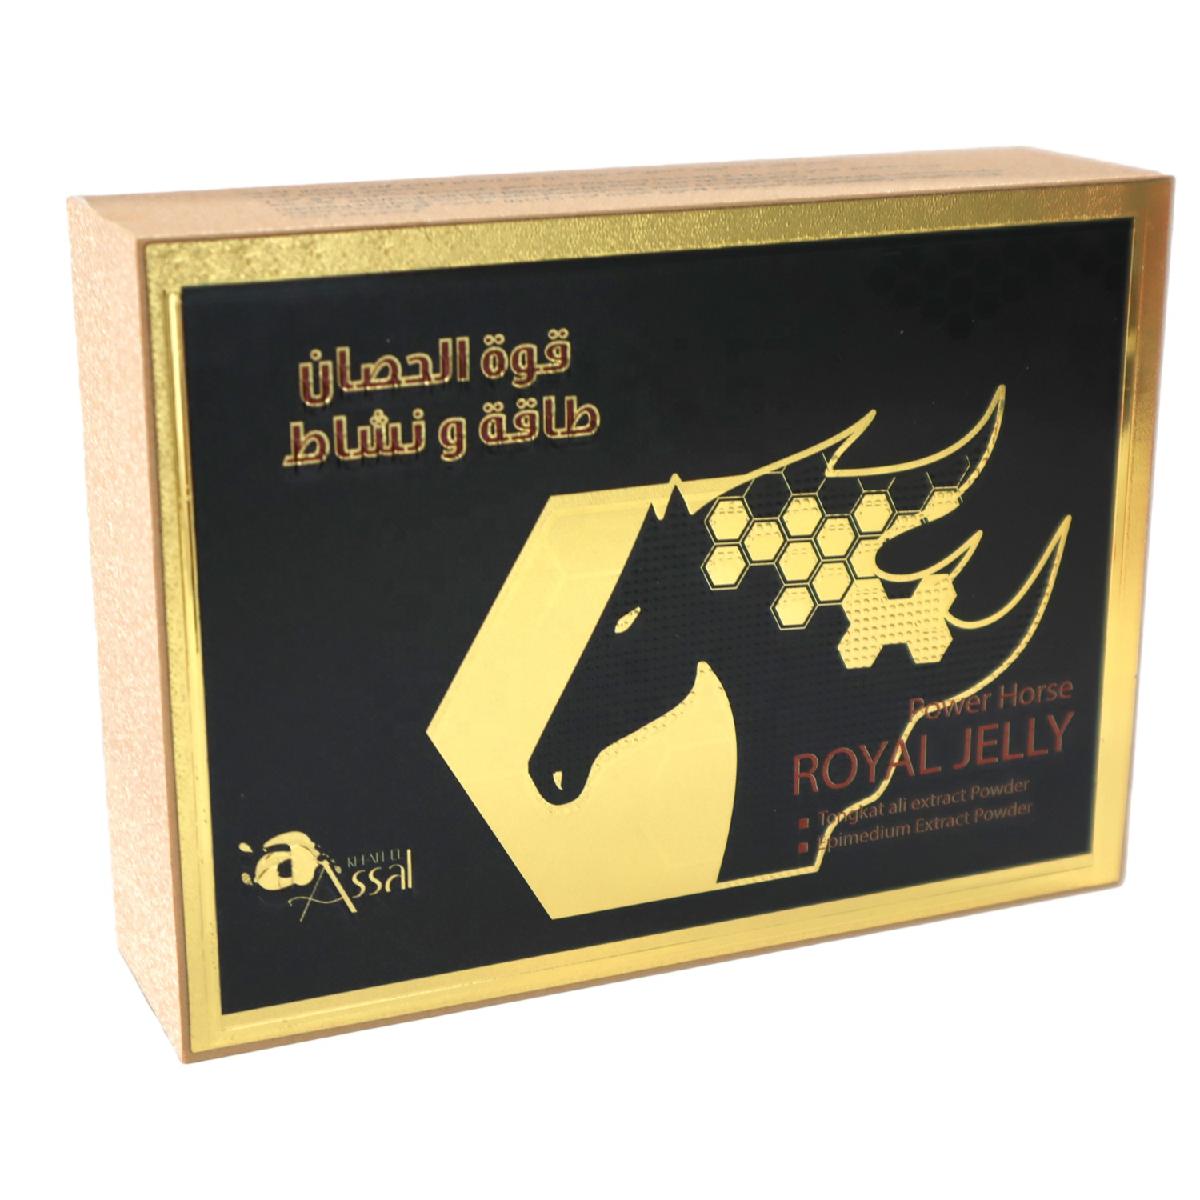 Black Horse Vital Honey 24 Sachets X 10G mumbai at Rs 2999/box